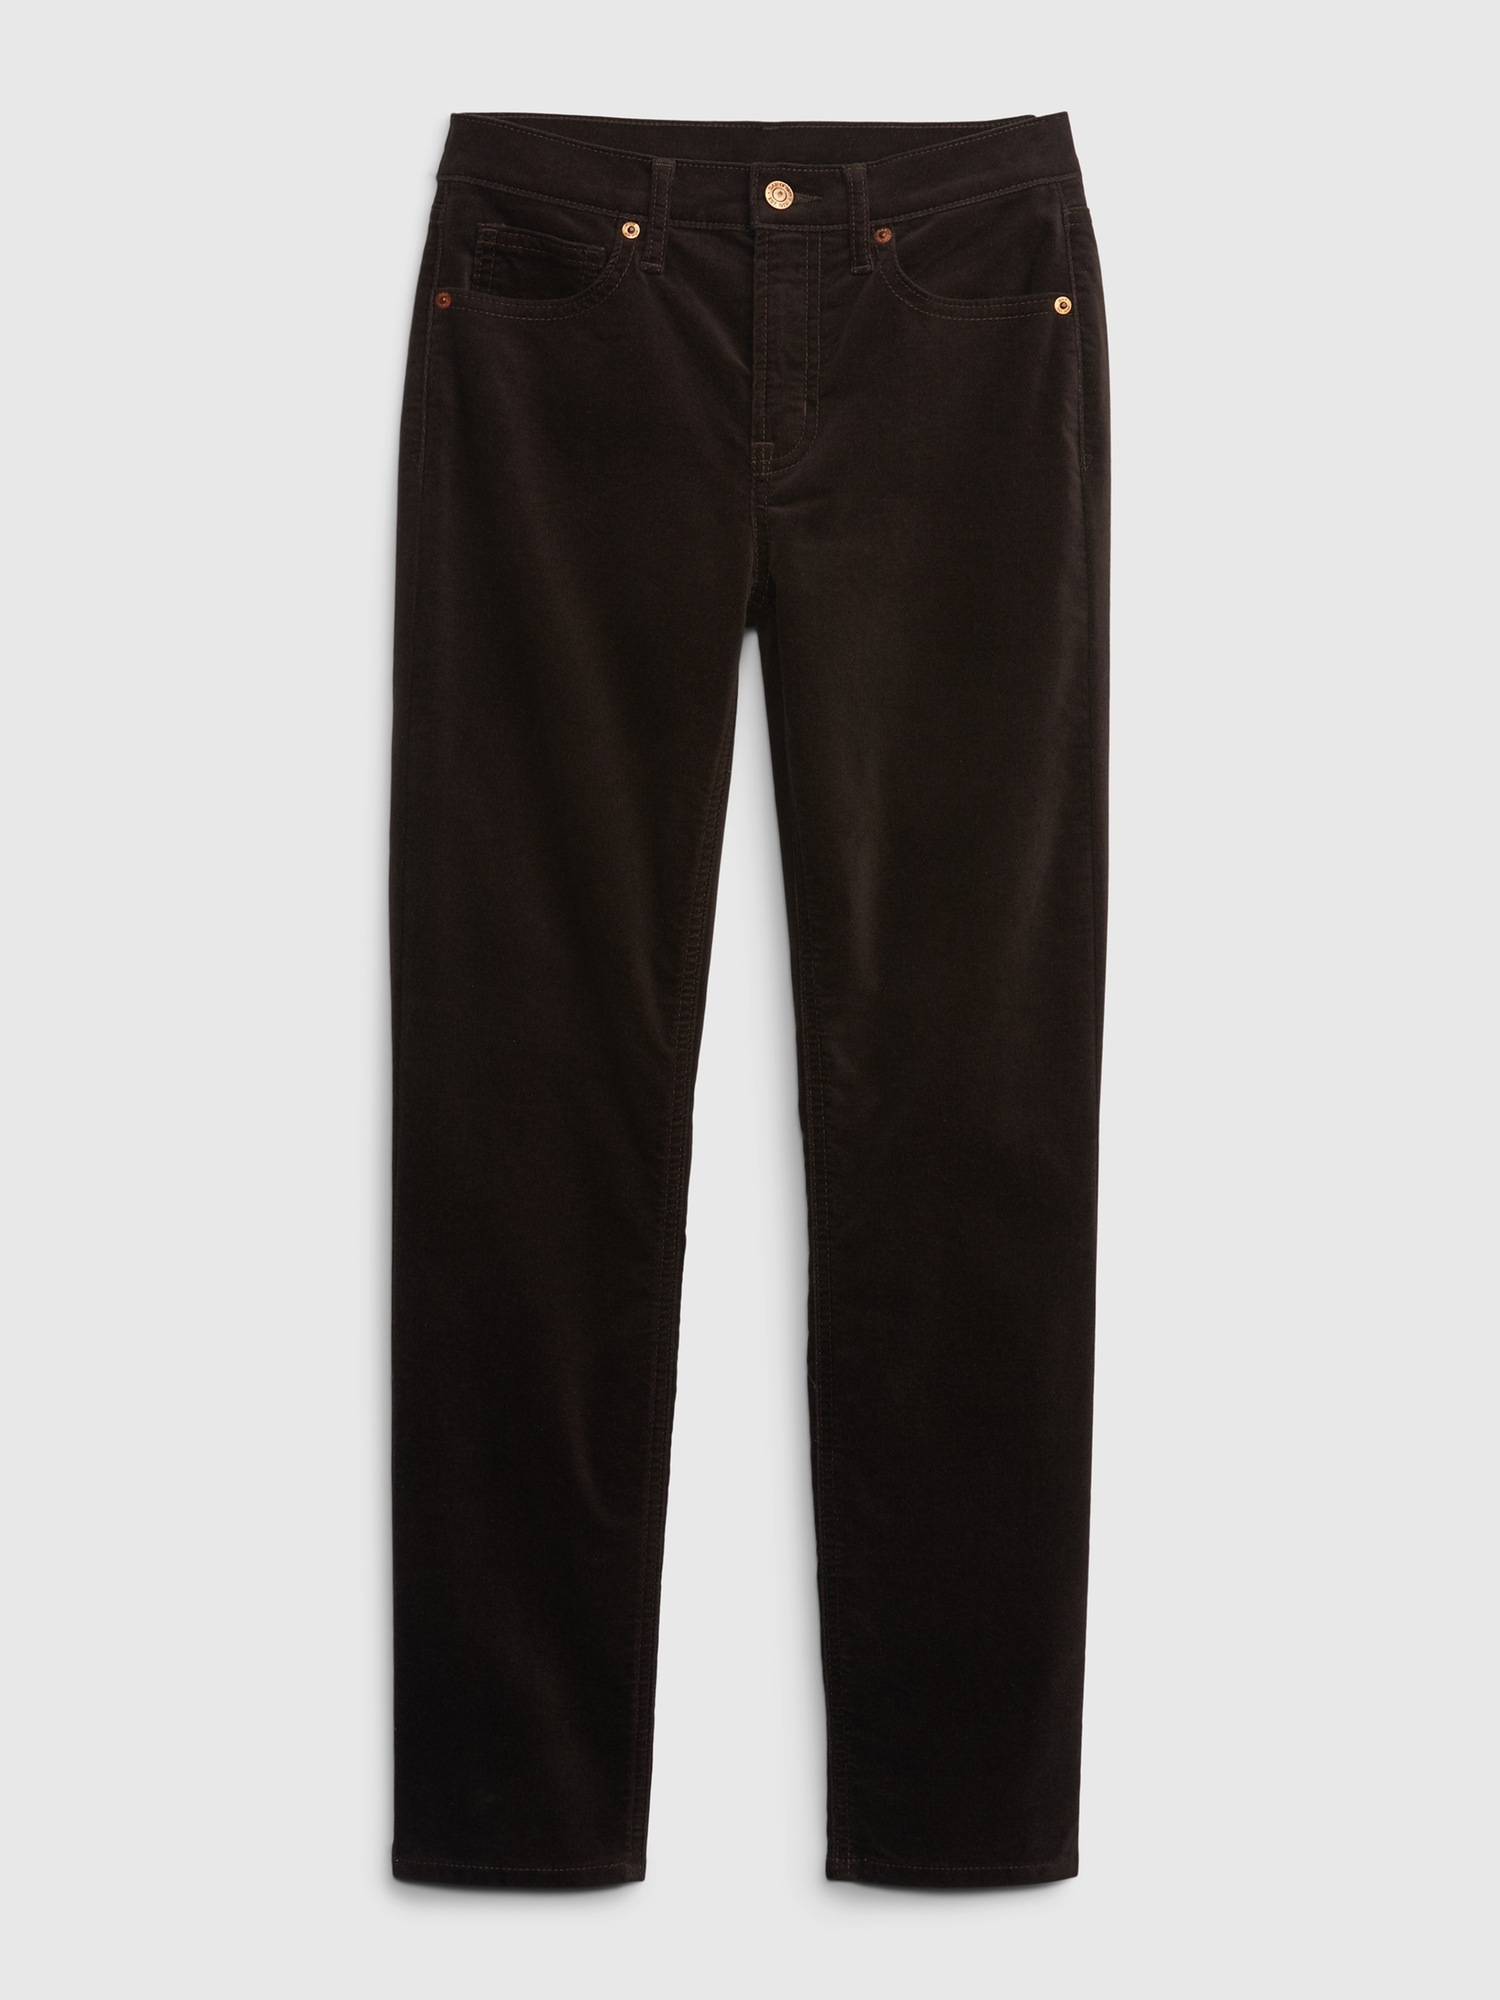 Gap vintage slim coated mid rise jean. EUC